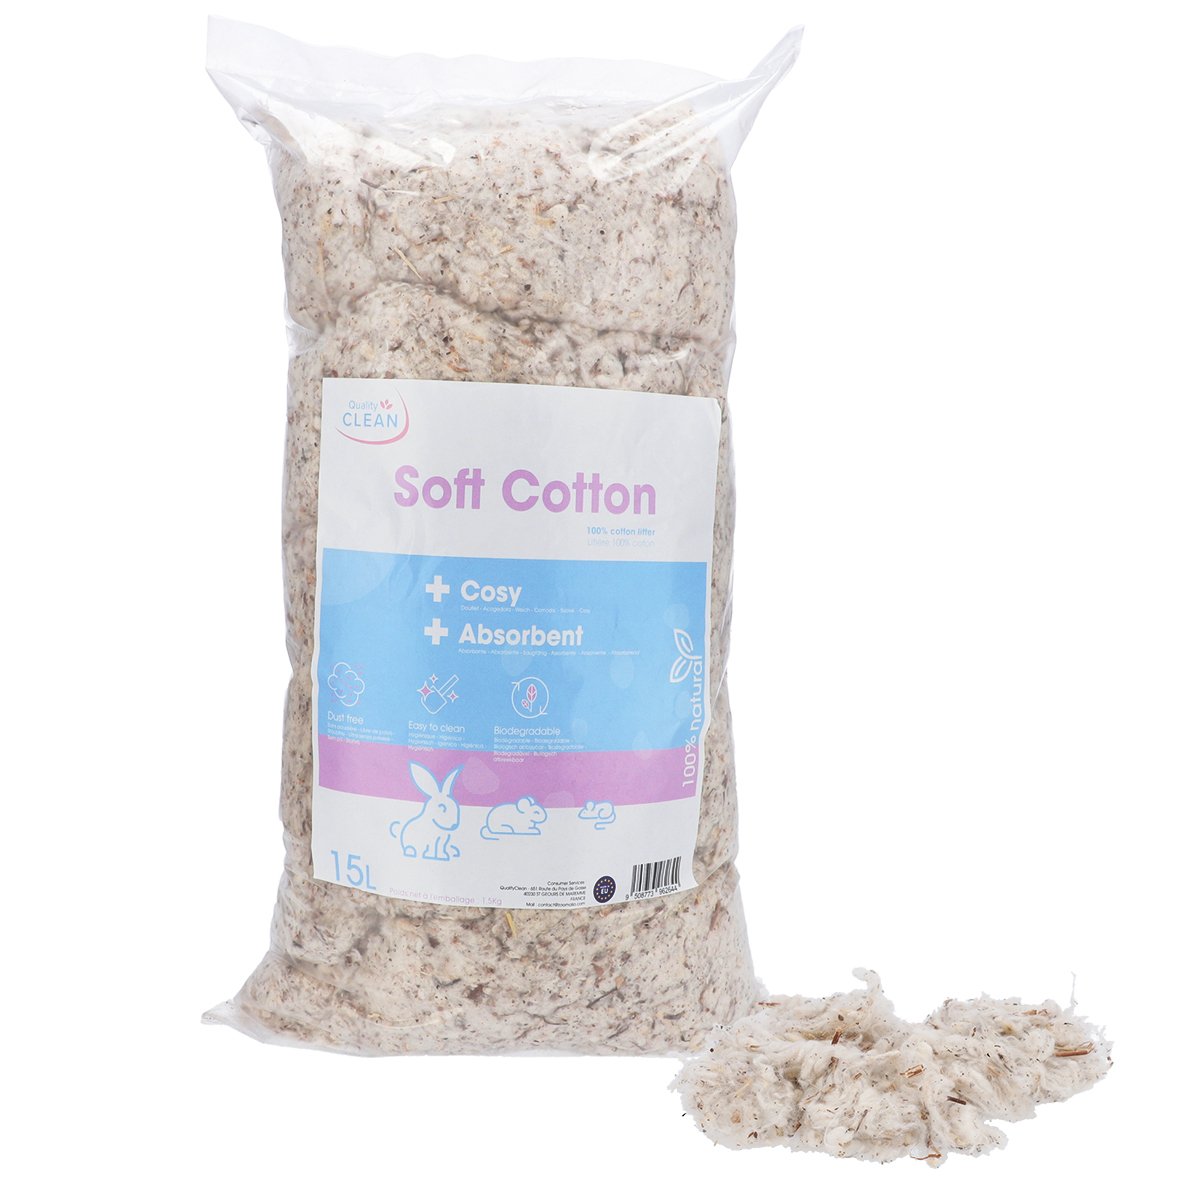 Lecho de algodón 100% natural para roedores Soft Cotton Quality Clean - 15 y 30 L